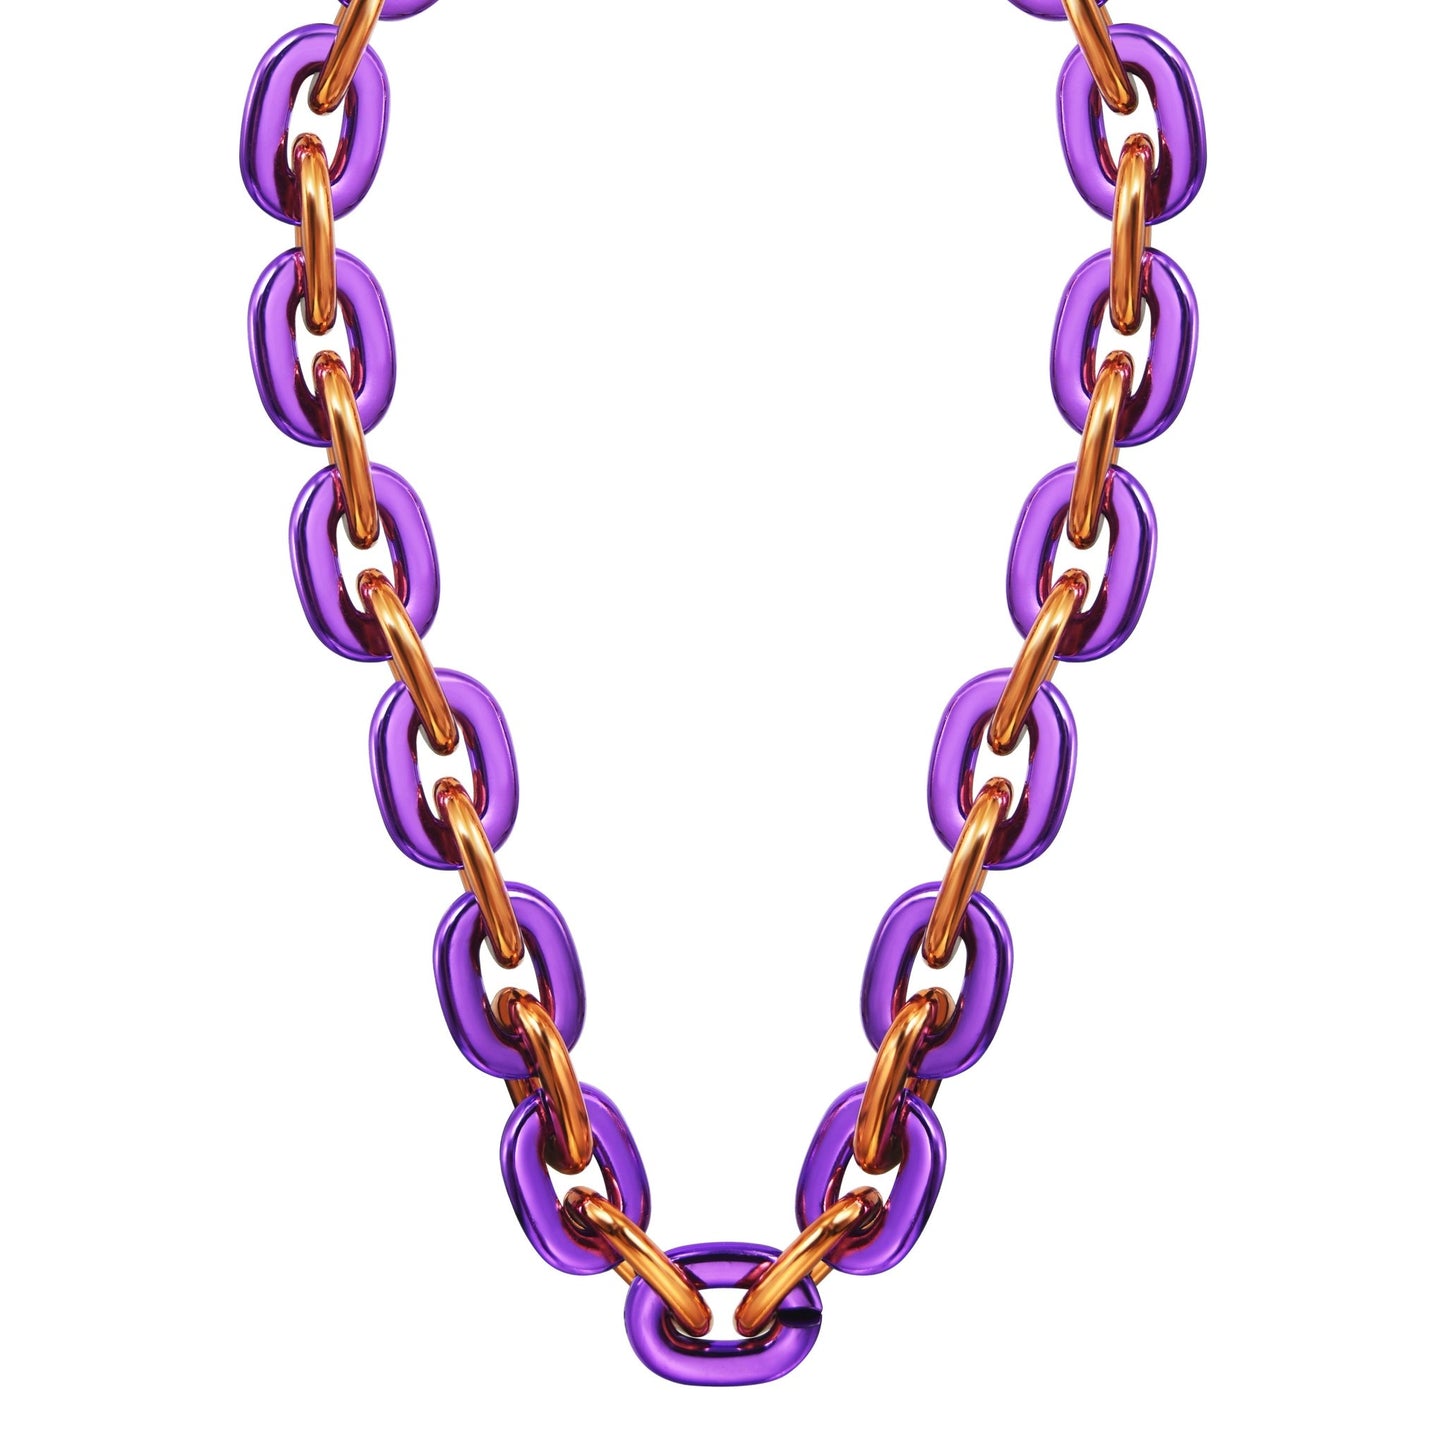 Jumbo Fan Chain Necklace - Gamedays Gear - Purple / Orange